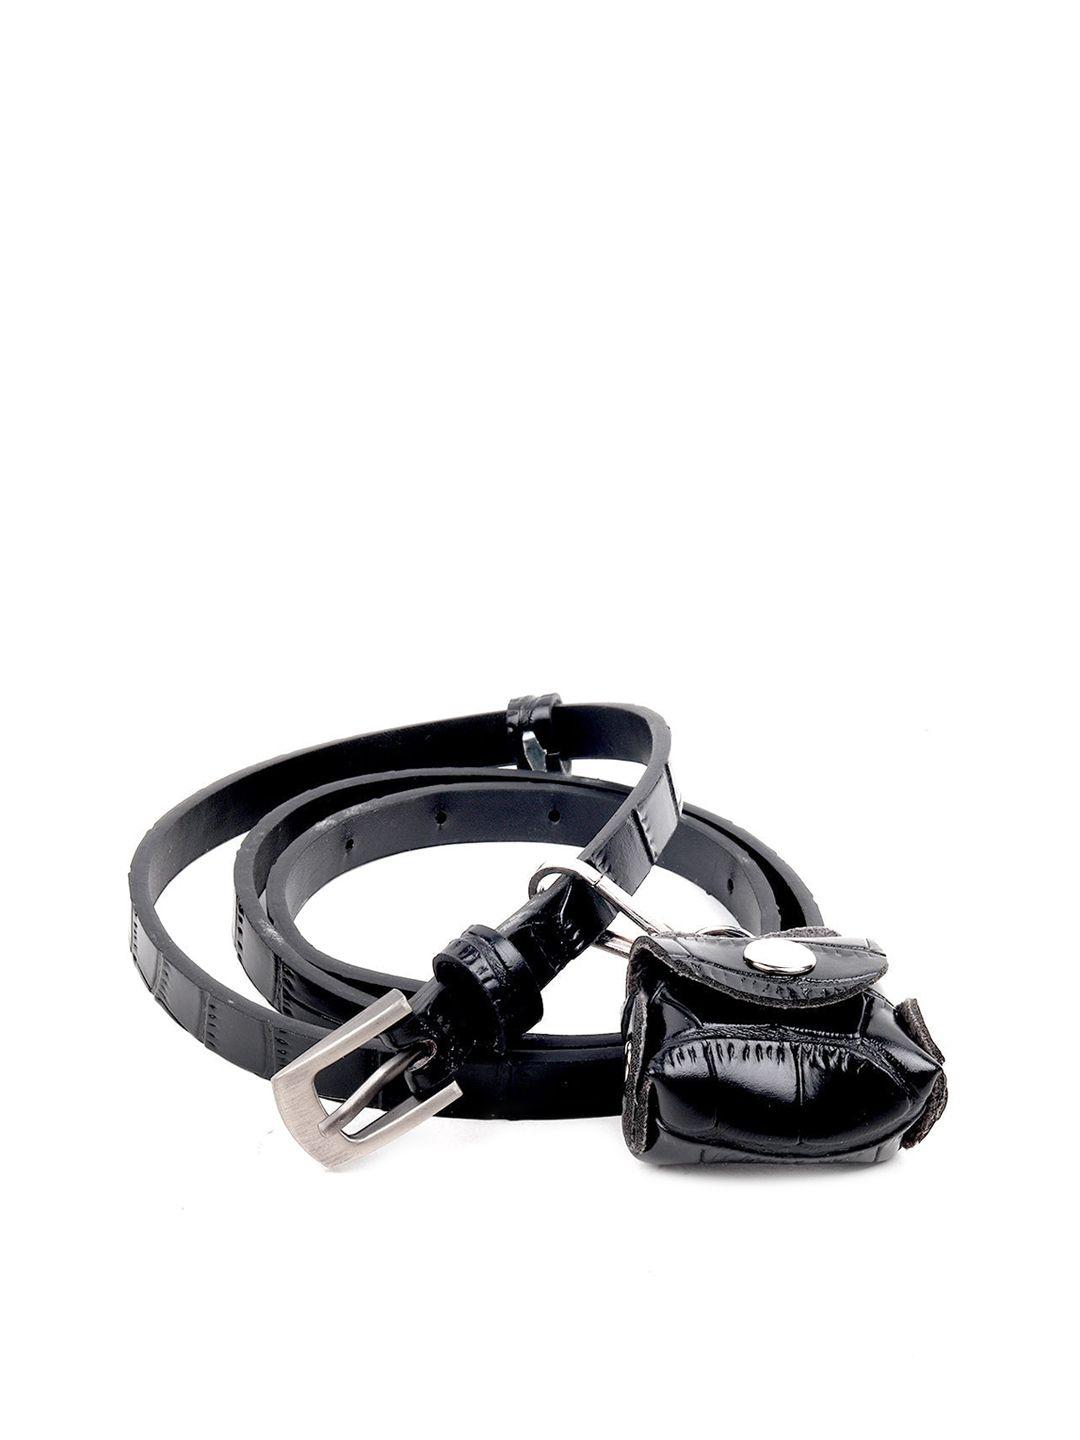 odette black leather miniature belt bag